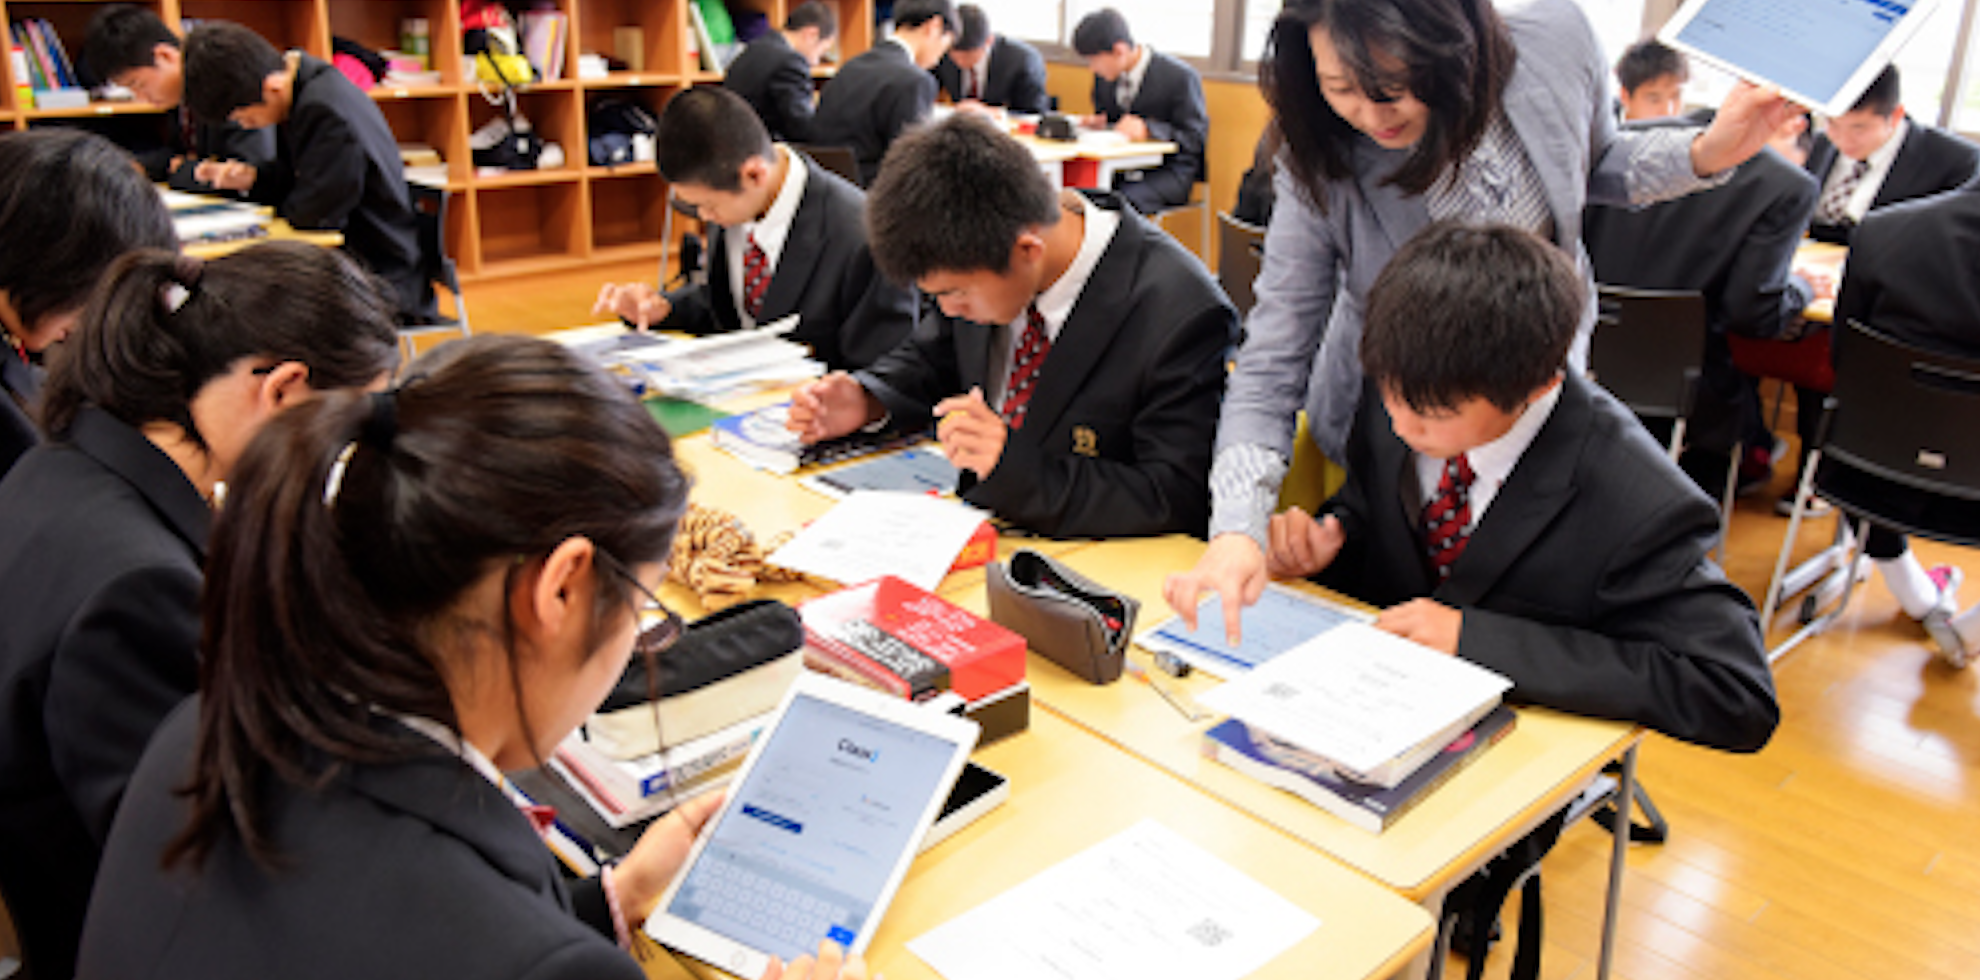 【京都は創価に乗っ取られた】京都の全ての公立校でiPadの自主購入が決定 創価企業アップルへの利益誘導に波紋広がる